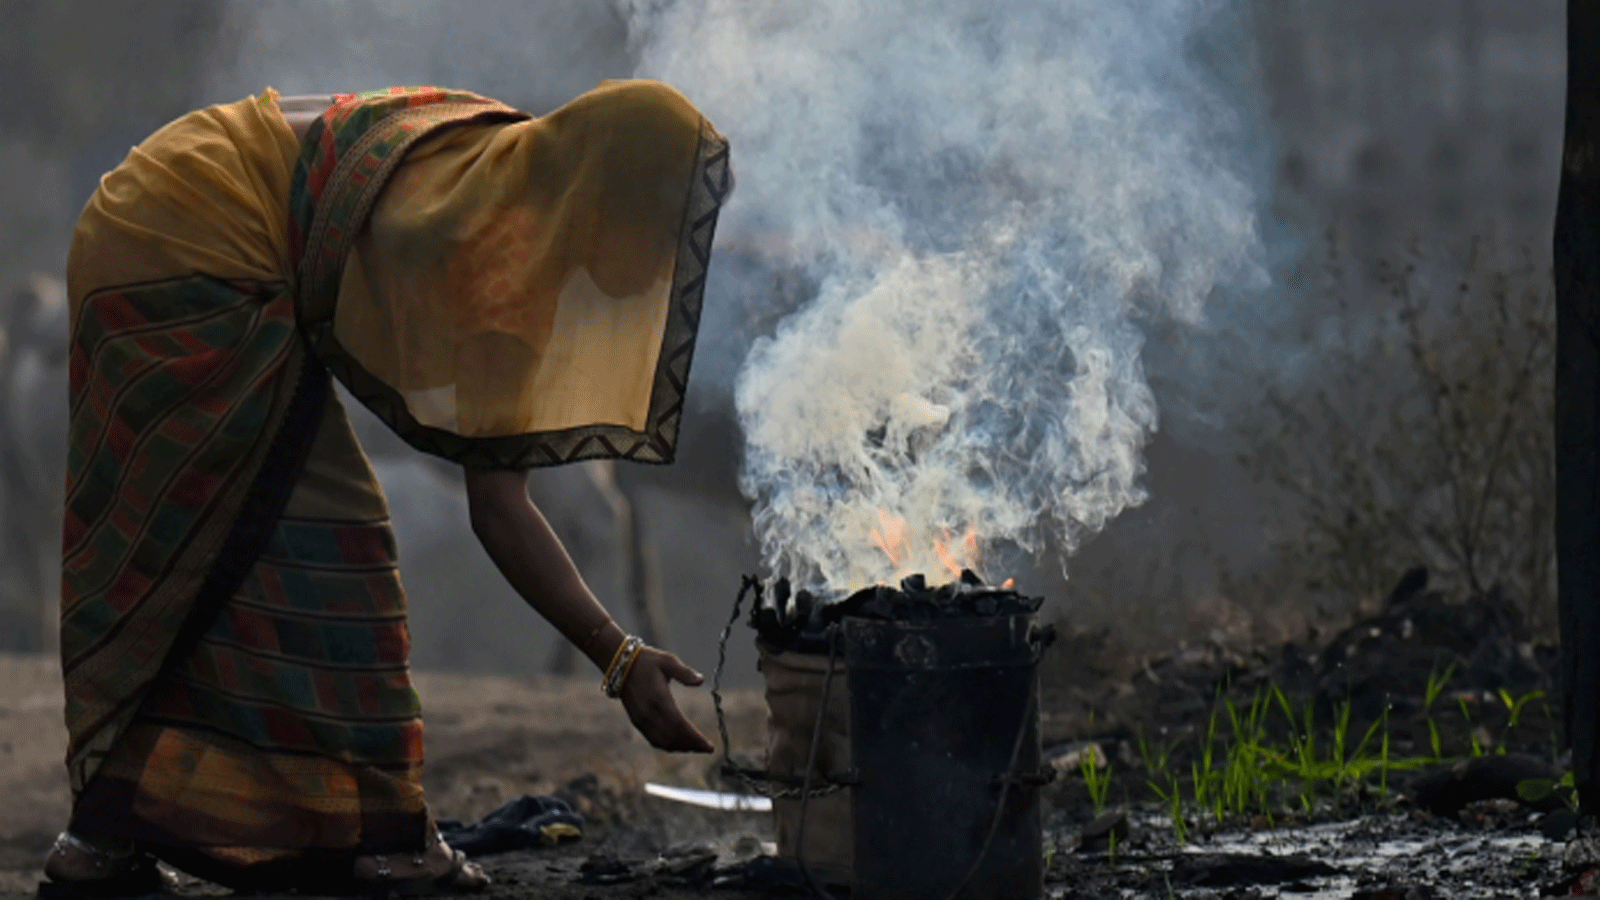 صورة توضيحية لامرأة تحرق الفحم للاستخدام المنزلي في سينجرولي(Singrauli) بولاية ماديا براديش(Madhya Pradesh) في الهند